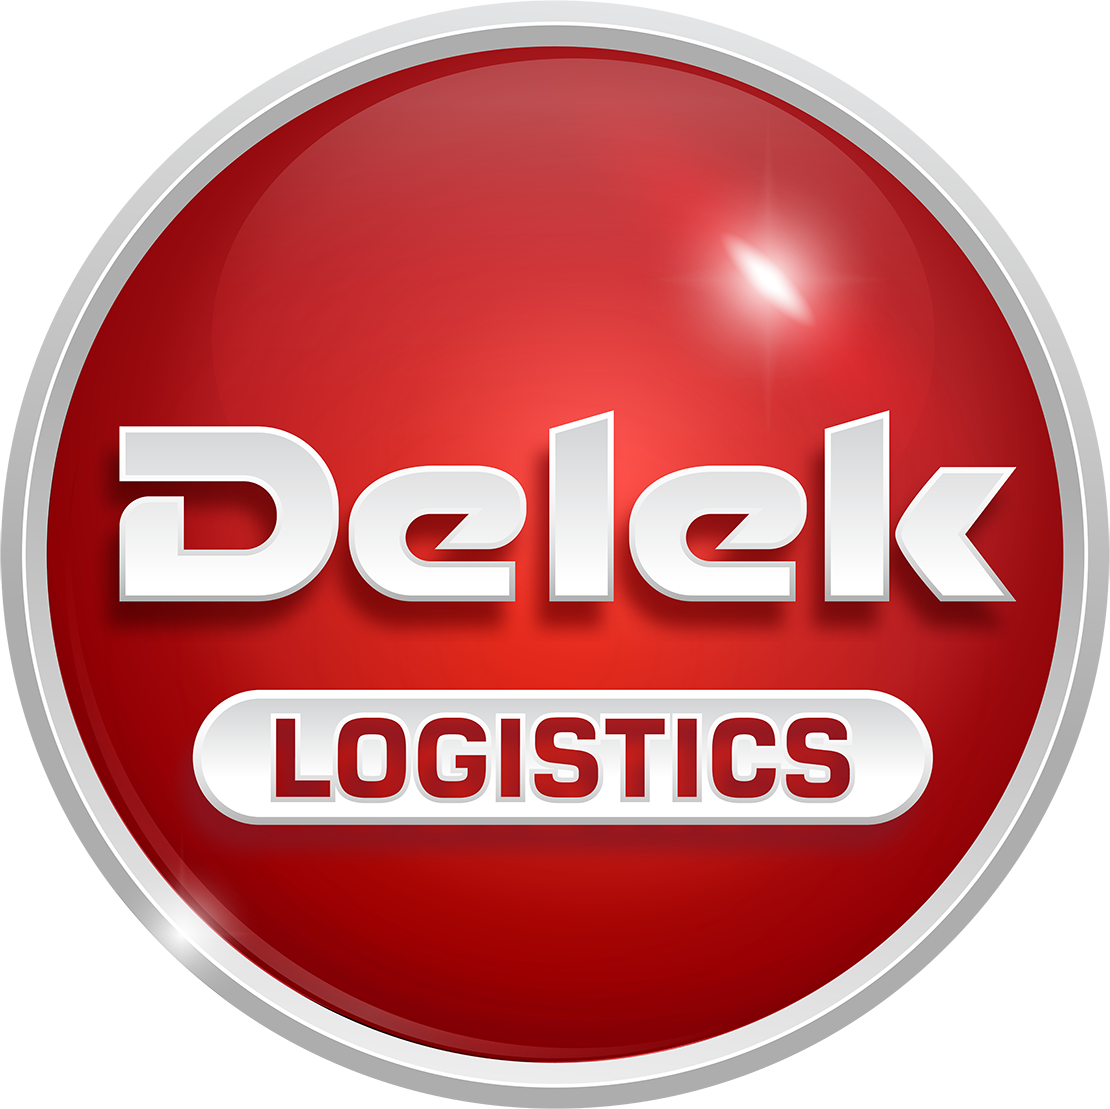 Delek Logistics Partners logo (transparent PNG)